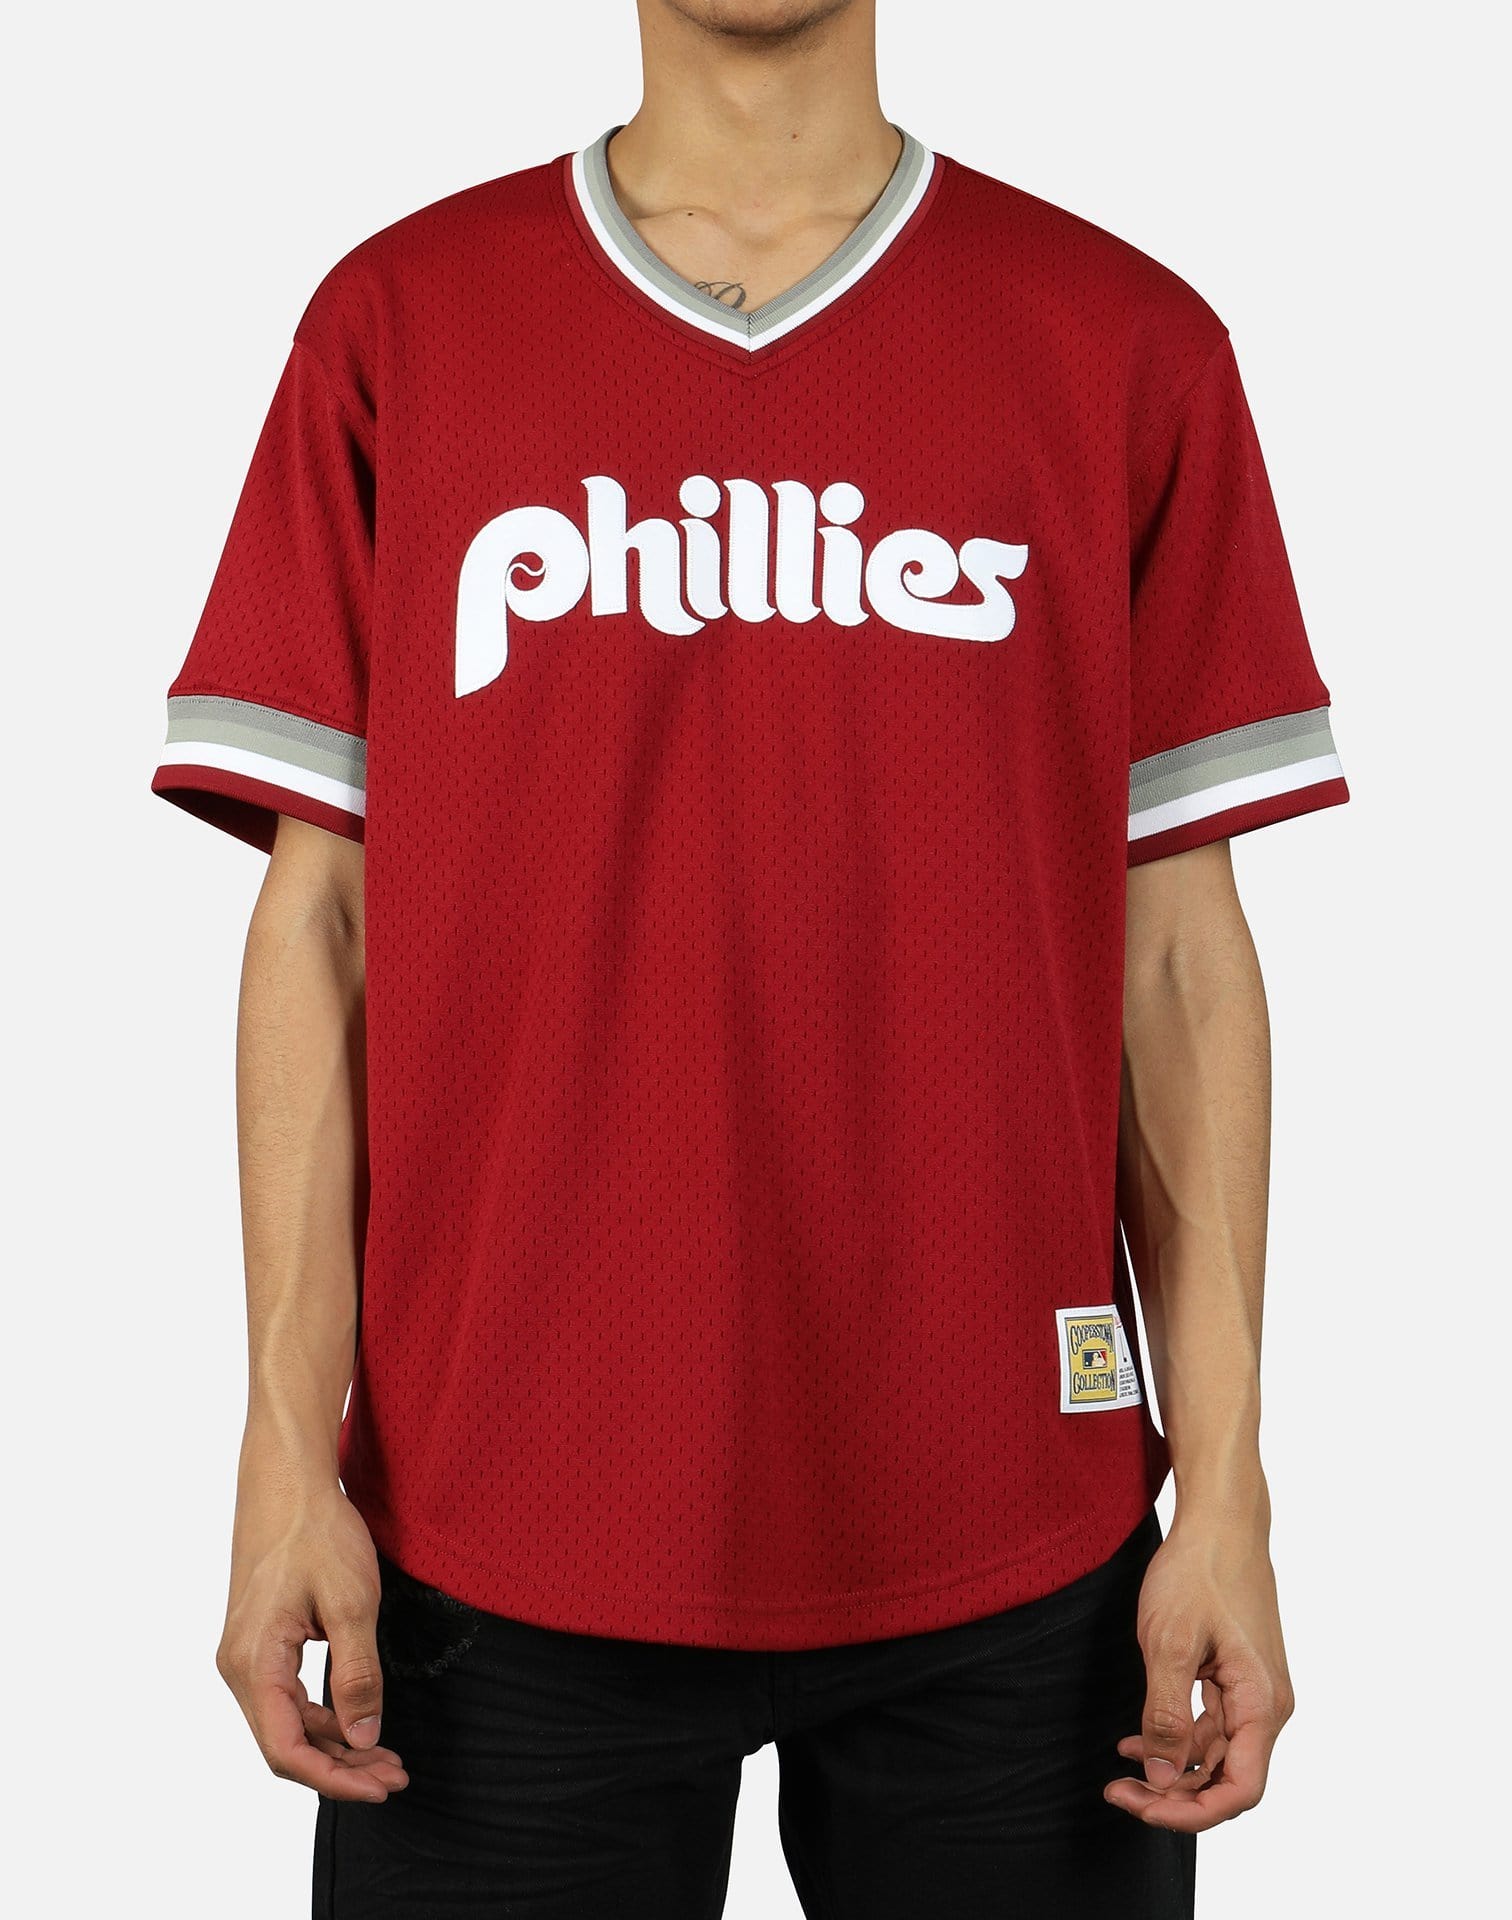 Philadelphia Phillies MLB Men's Red V-Neck Shirt Baseball